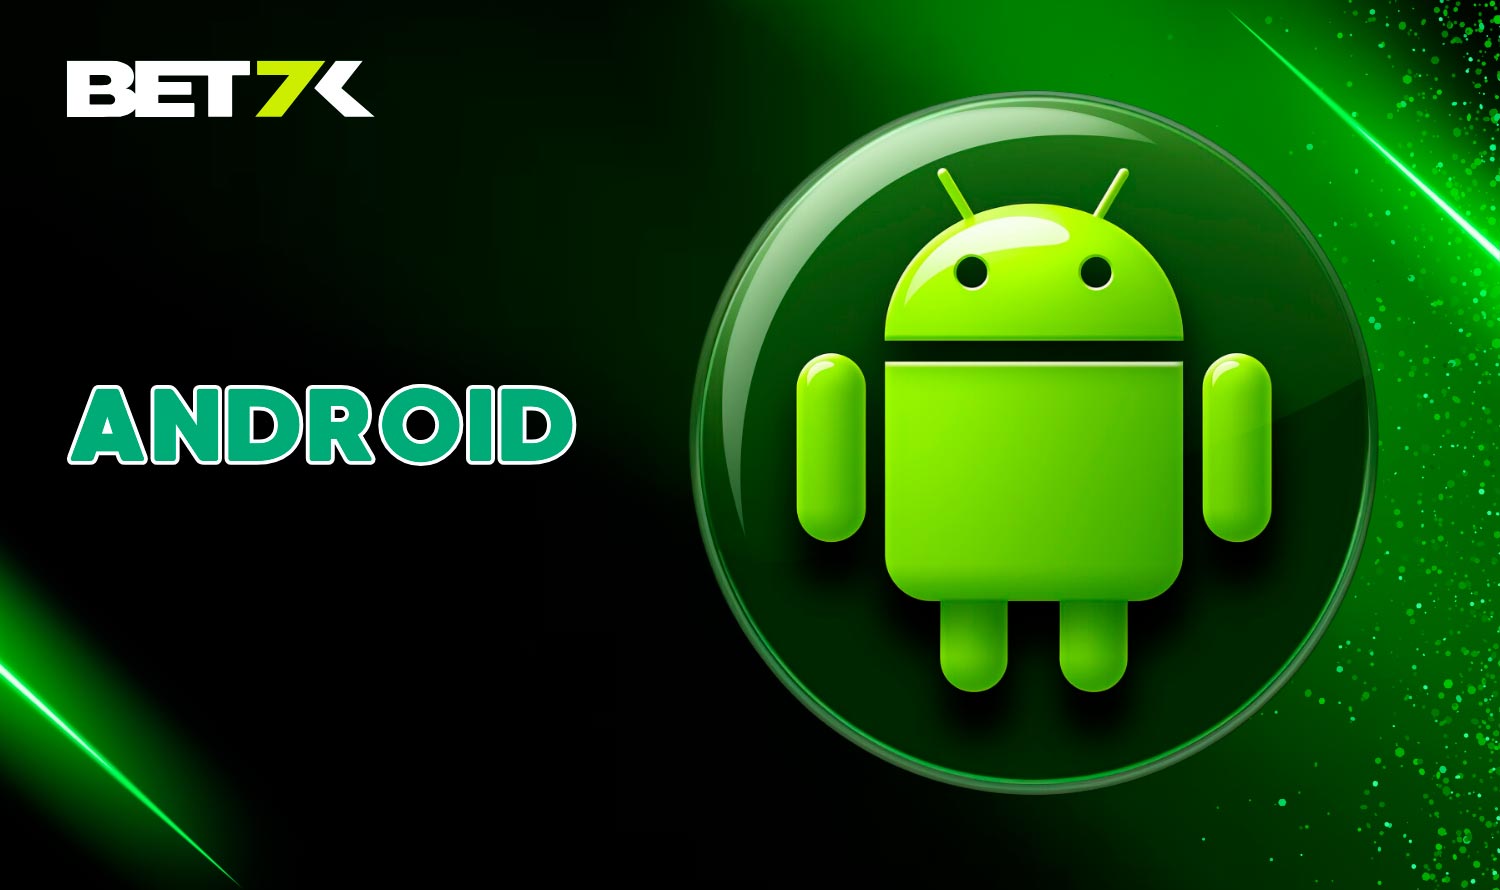 Baixe o Aplicativo da Bet7k Para Android - Grátis